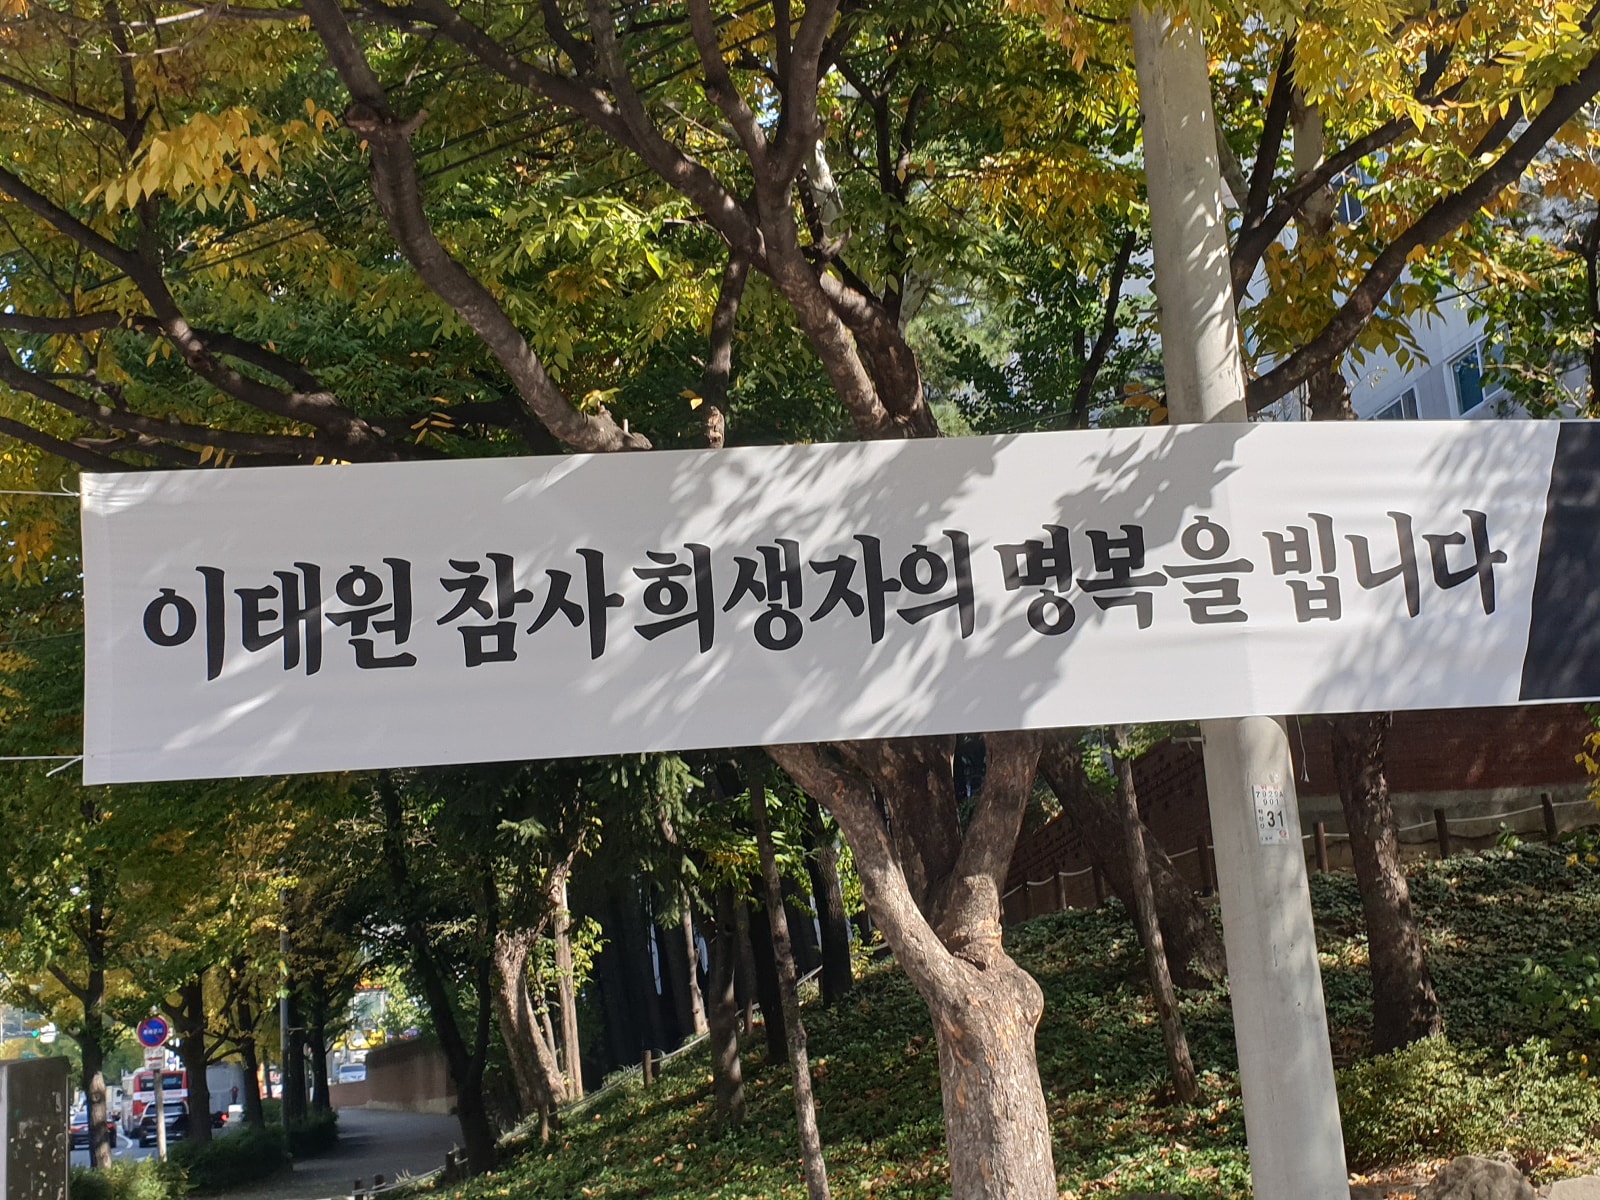 「梨泰院惨事犠牲者の冥福をお祈り致します」梨泰院群集事故の犠牲者を追悼する横断幕。韓国のいたるところでこのような横断幕が掲げられている